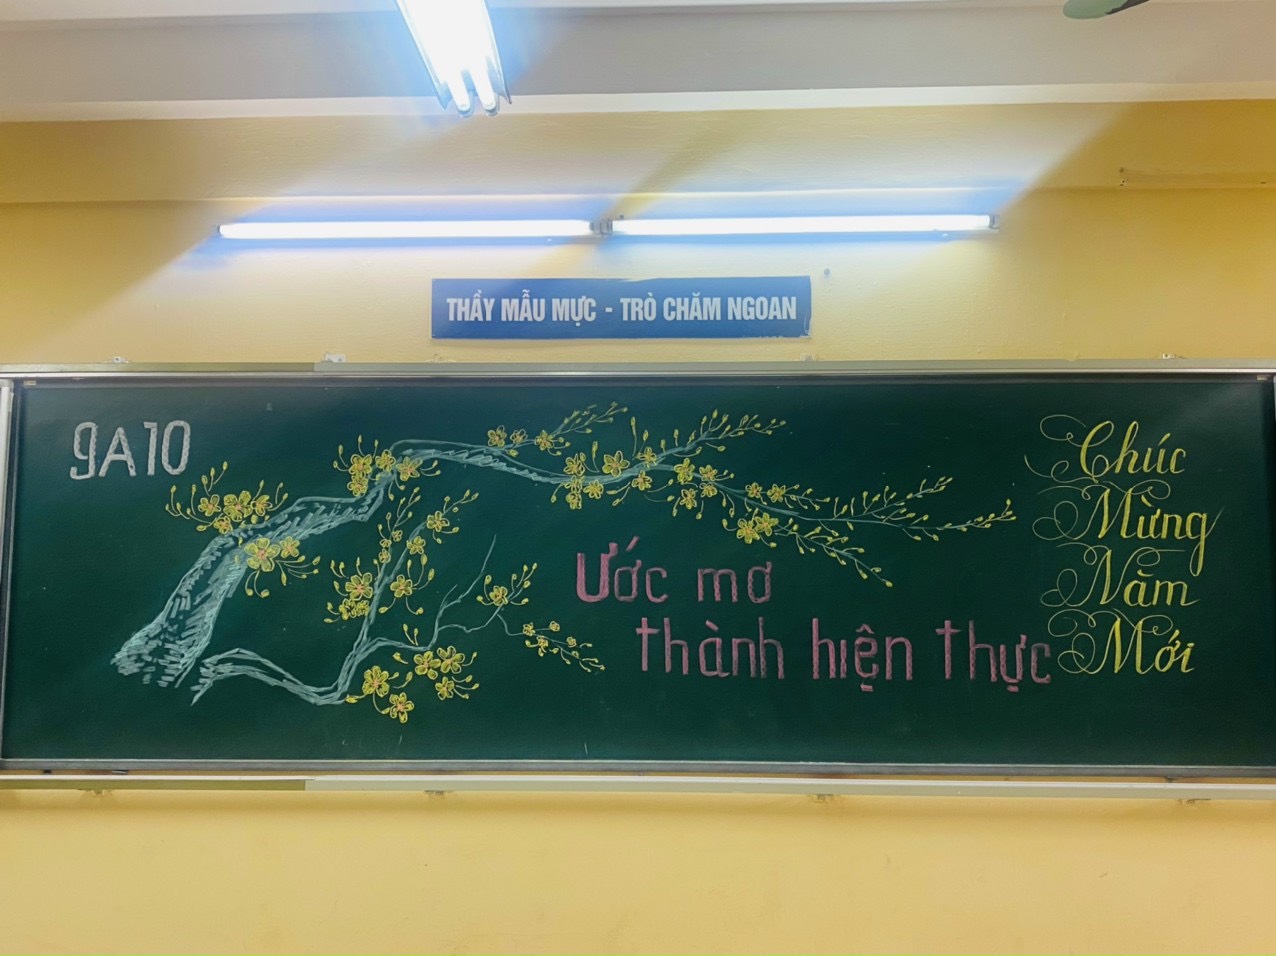 Trường Hà Nội trang trí tưng bừng đón học sinh đi học lại sau Tết